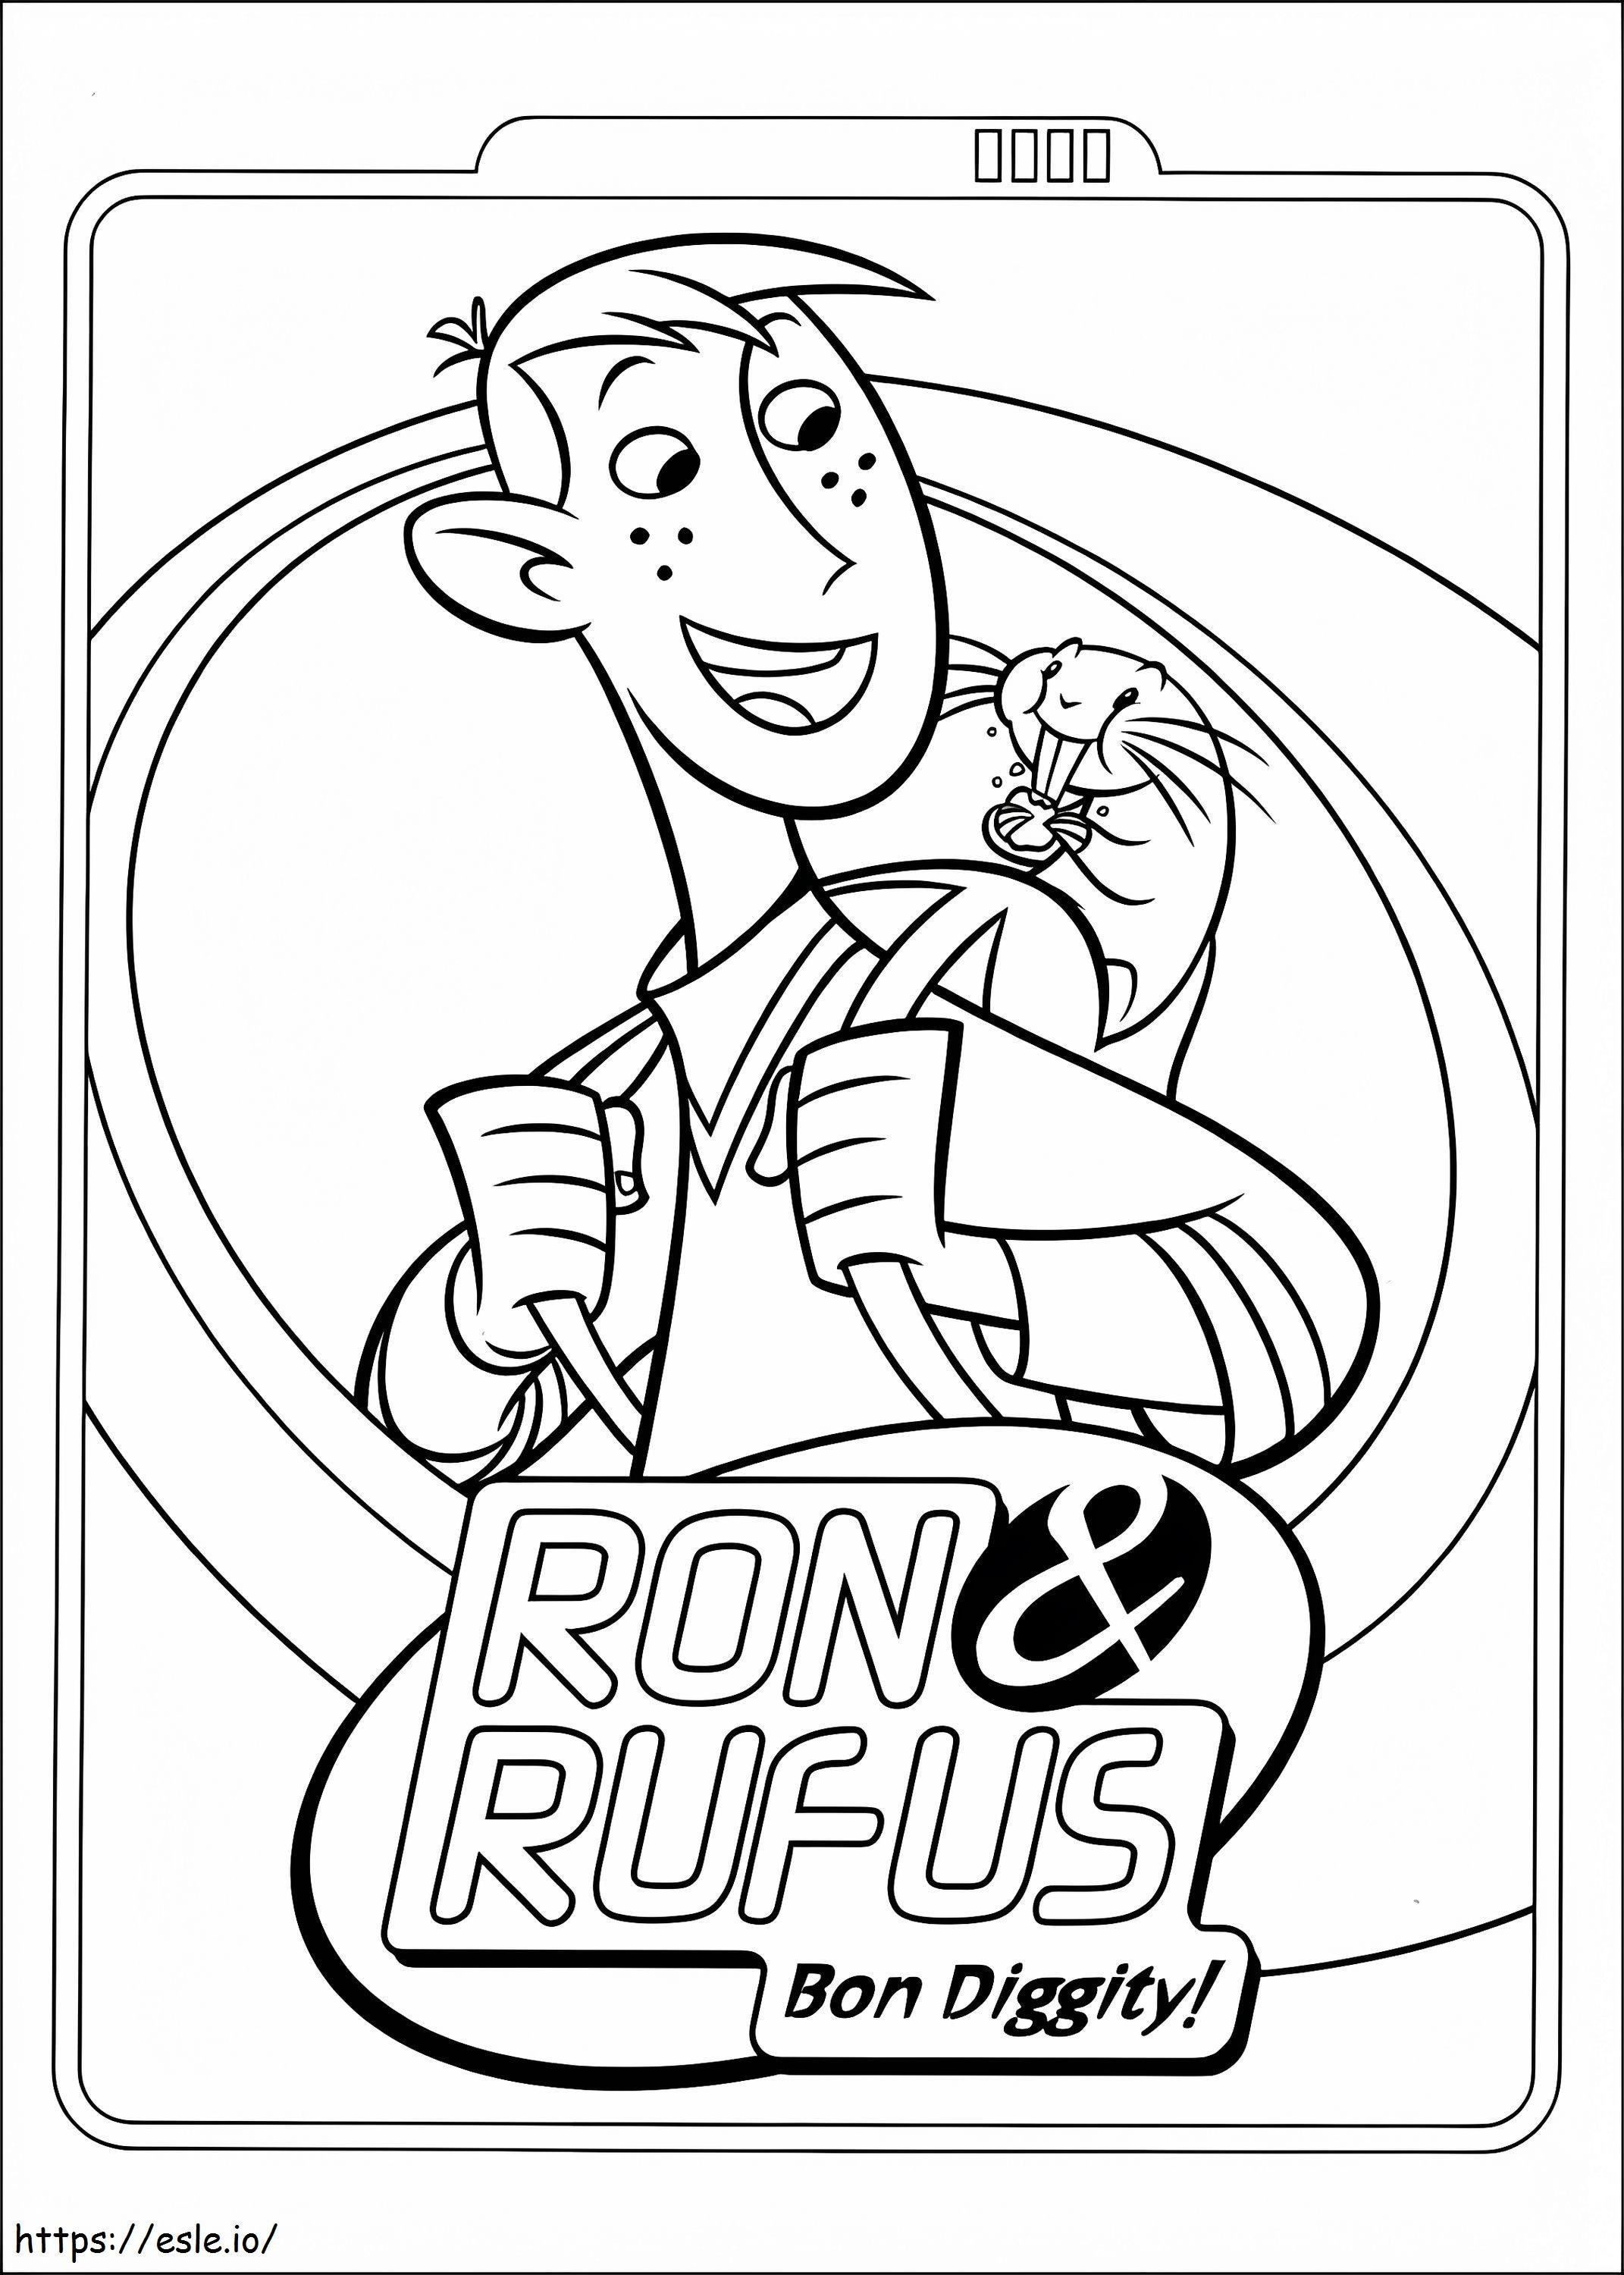  Ron e Rufus A4 para colorir